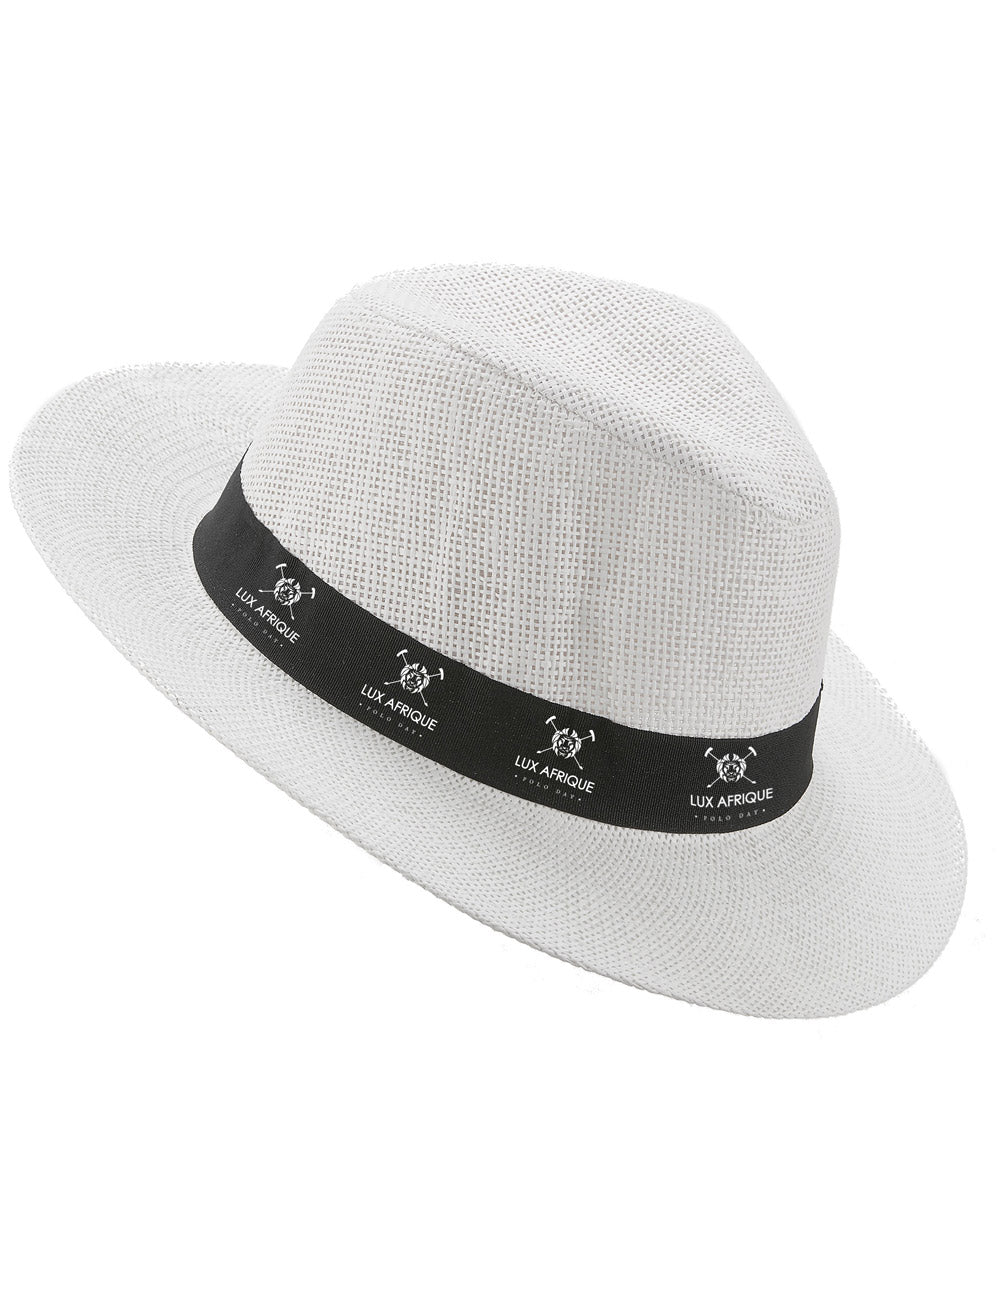 Lux Afrique Polo Day Merchandise Hat